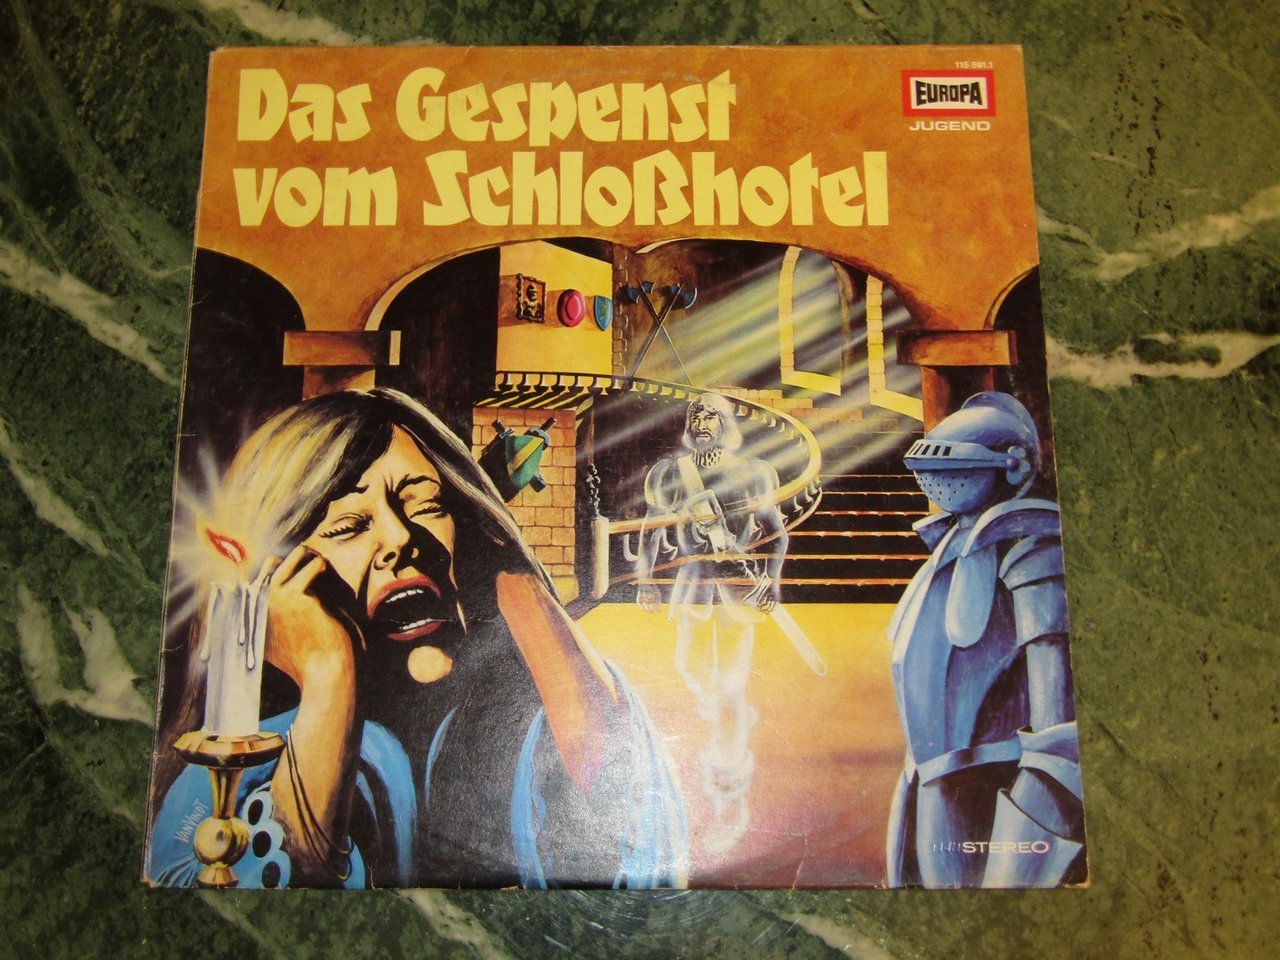 Das Gespenst vom Schloßhotel EUROPA 1155911 Vinyl LP